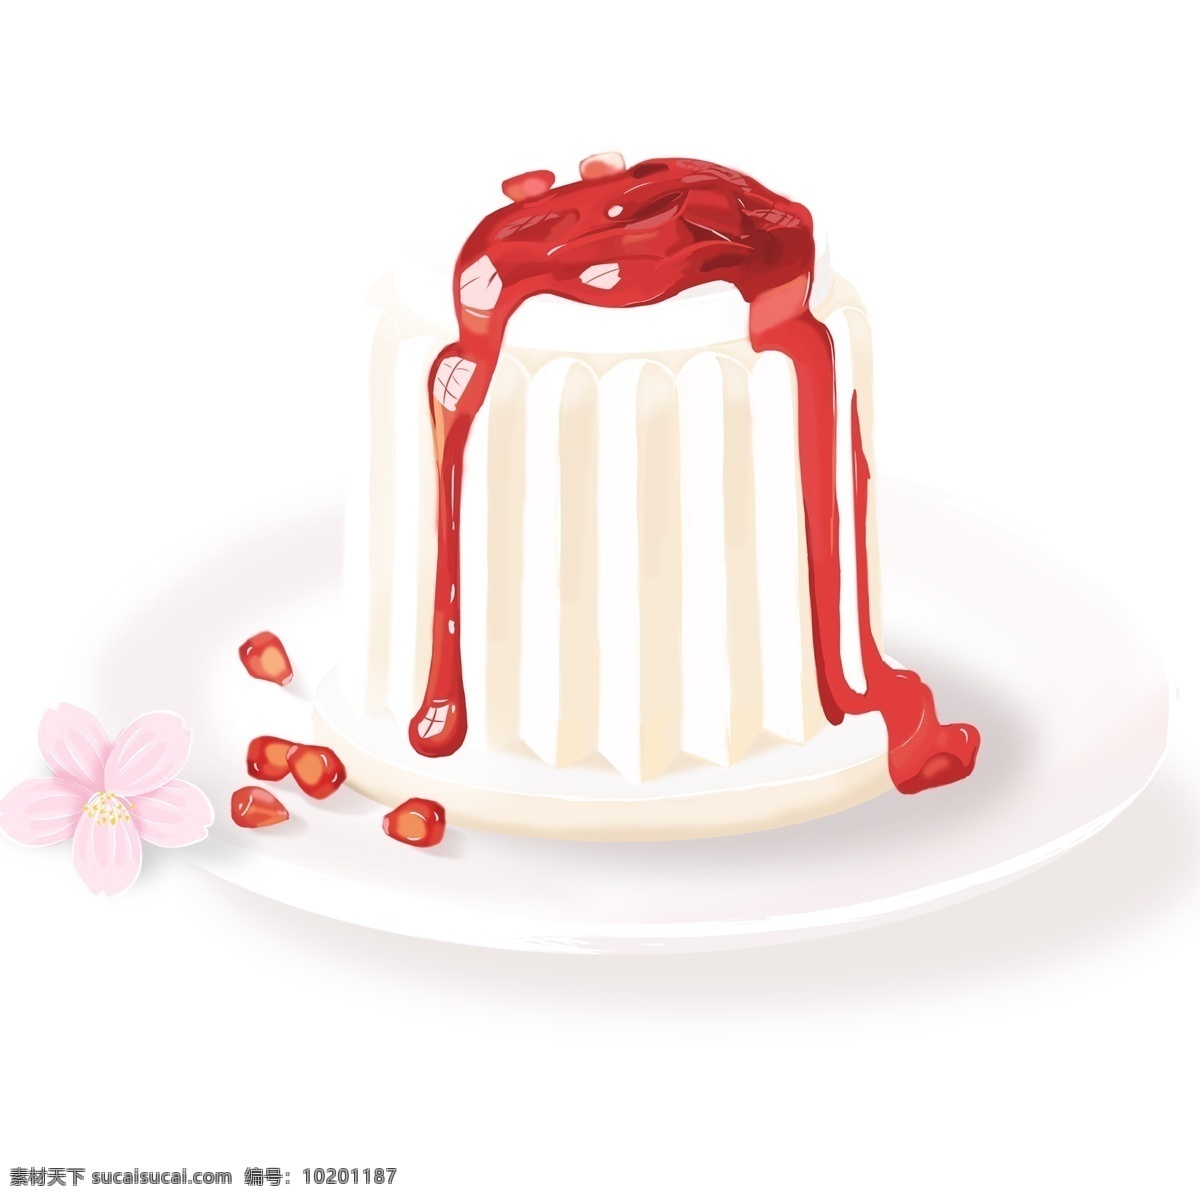 美味 草莓 慕 斯 蛋糕 装饰 元素 装饰元素 果酱 食物 下午茶 盘子 花朵